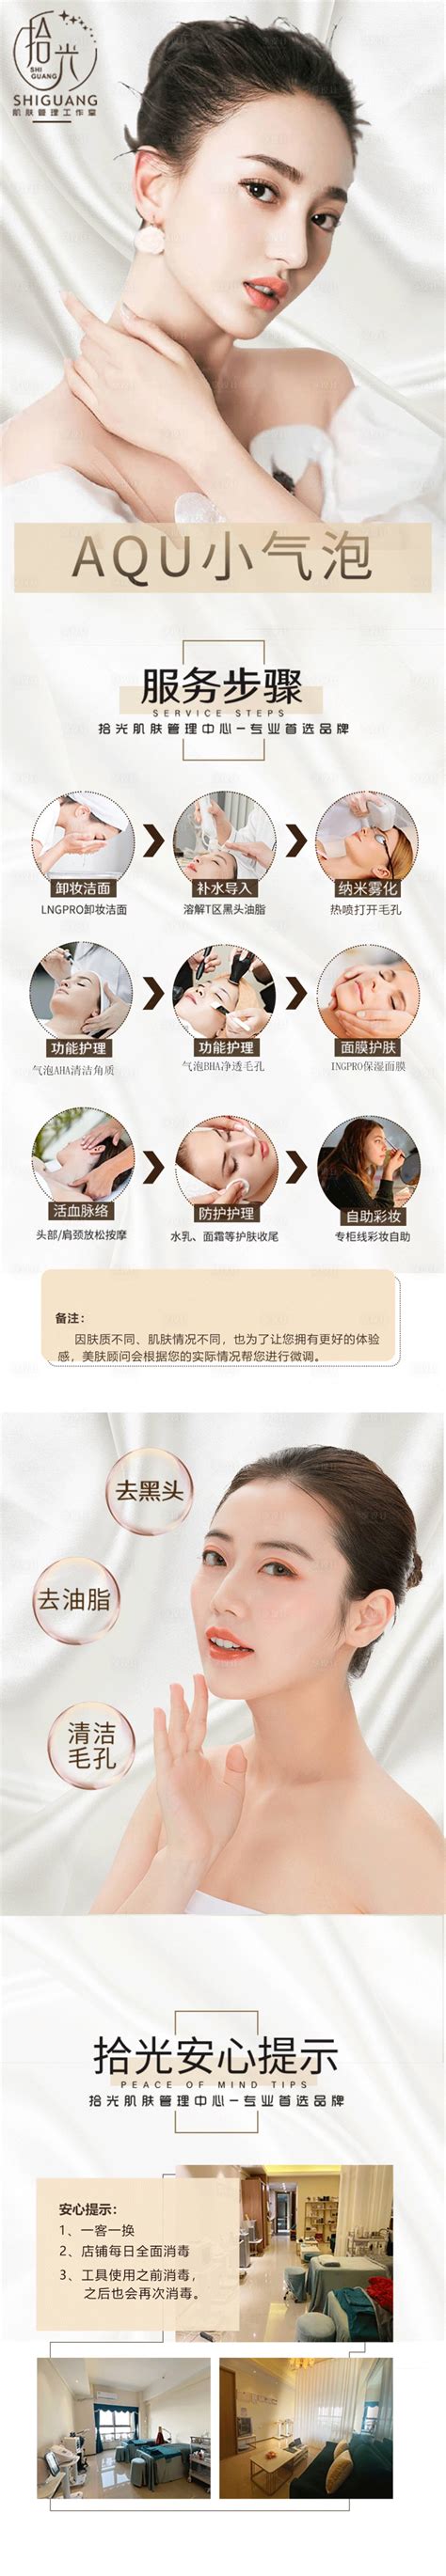 大众点评医美美容护肤轮播图bannePSD广告设计素材海报模板免费下载-享设计